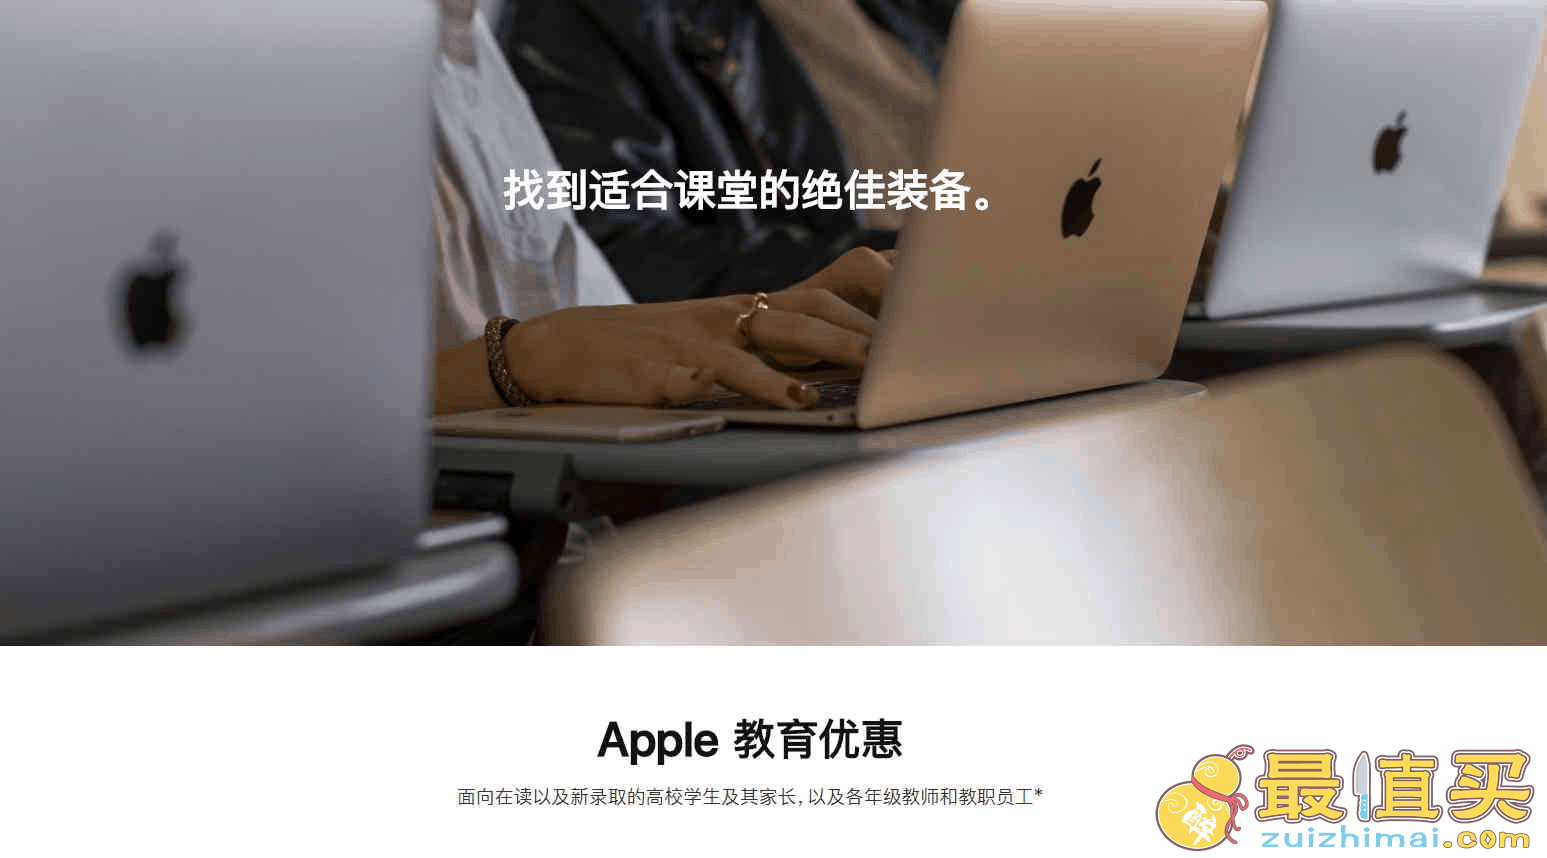 怎么可以享受到苹果商店的教育优惠?2021 Apple教育优惠计划是什么?包括哪些产品?